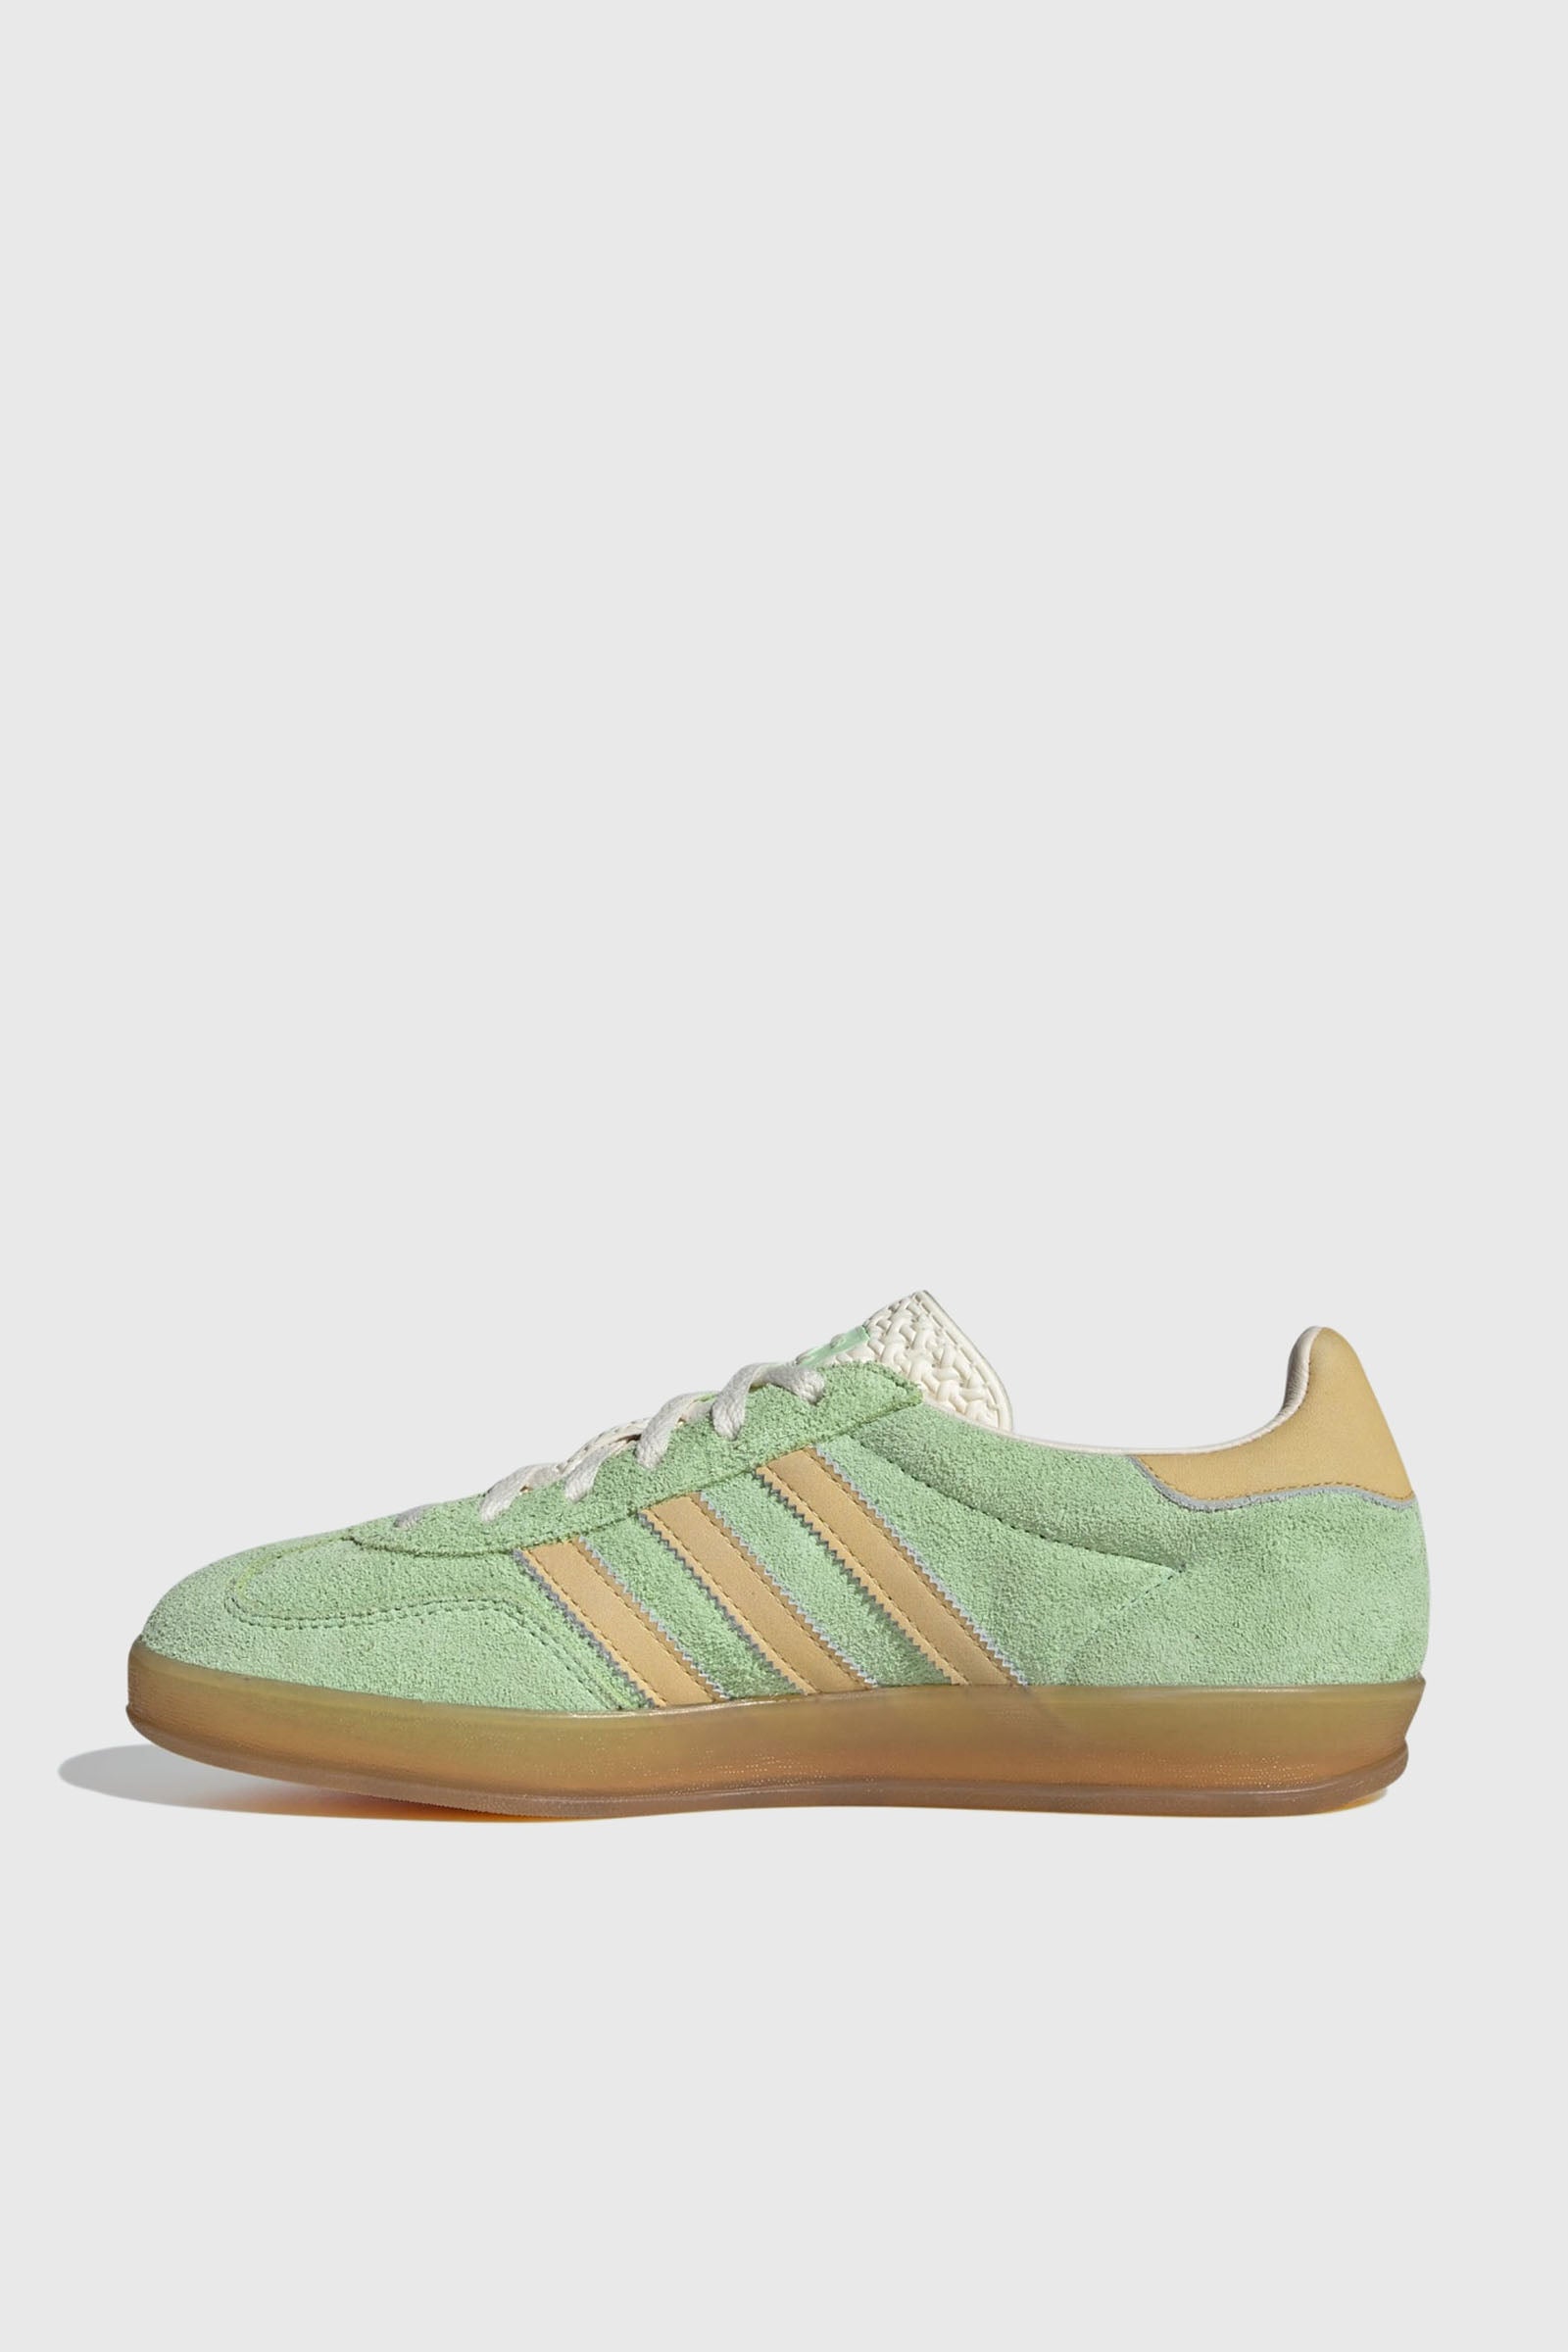 Adidas Originals Sneaker Gazelle Indoor W Light Green Synthetic - 6